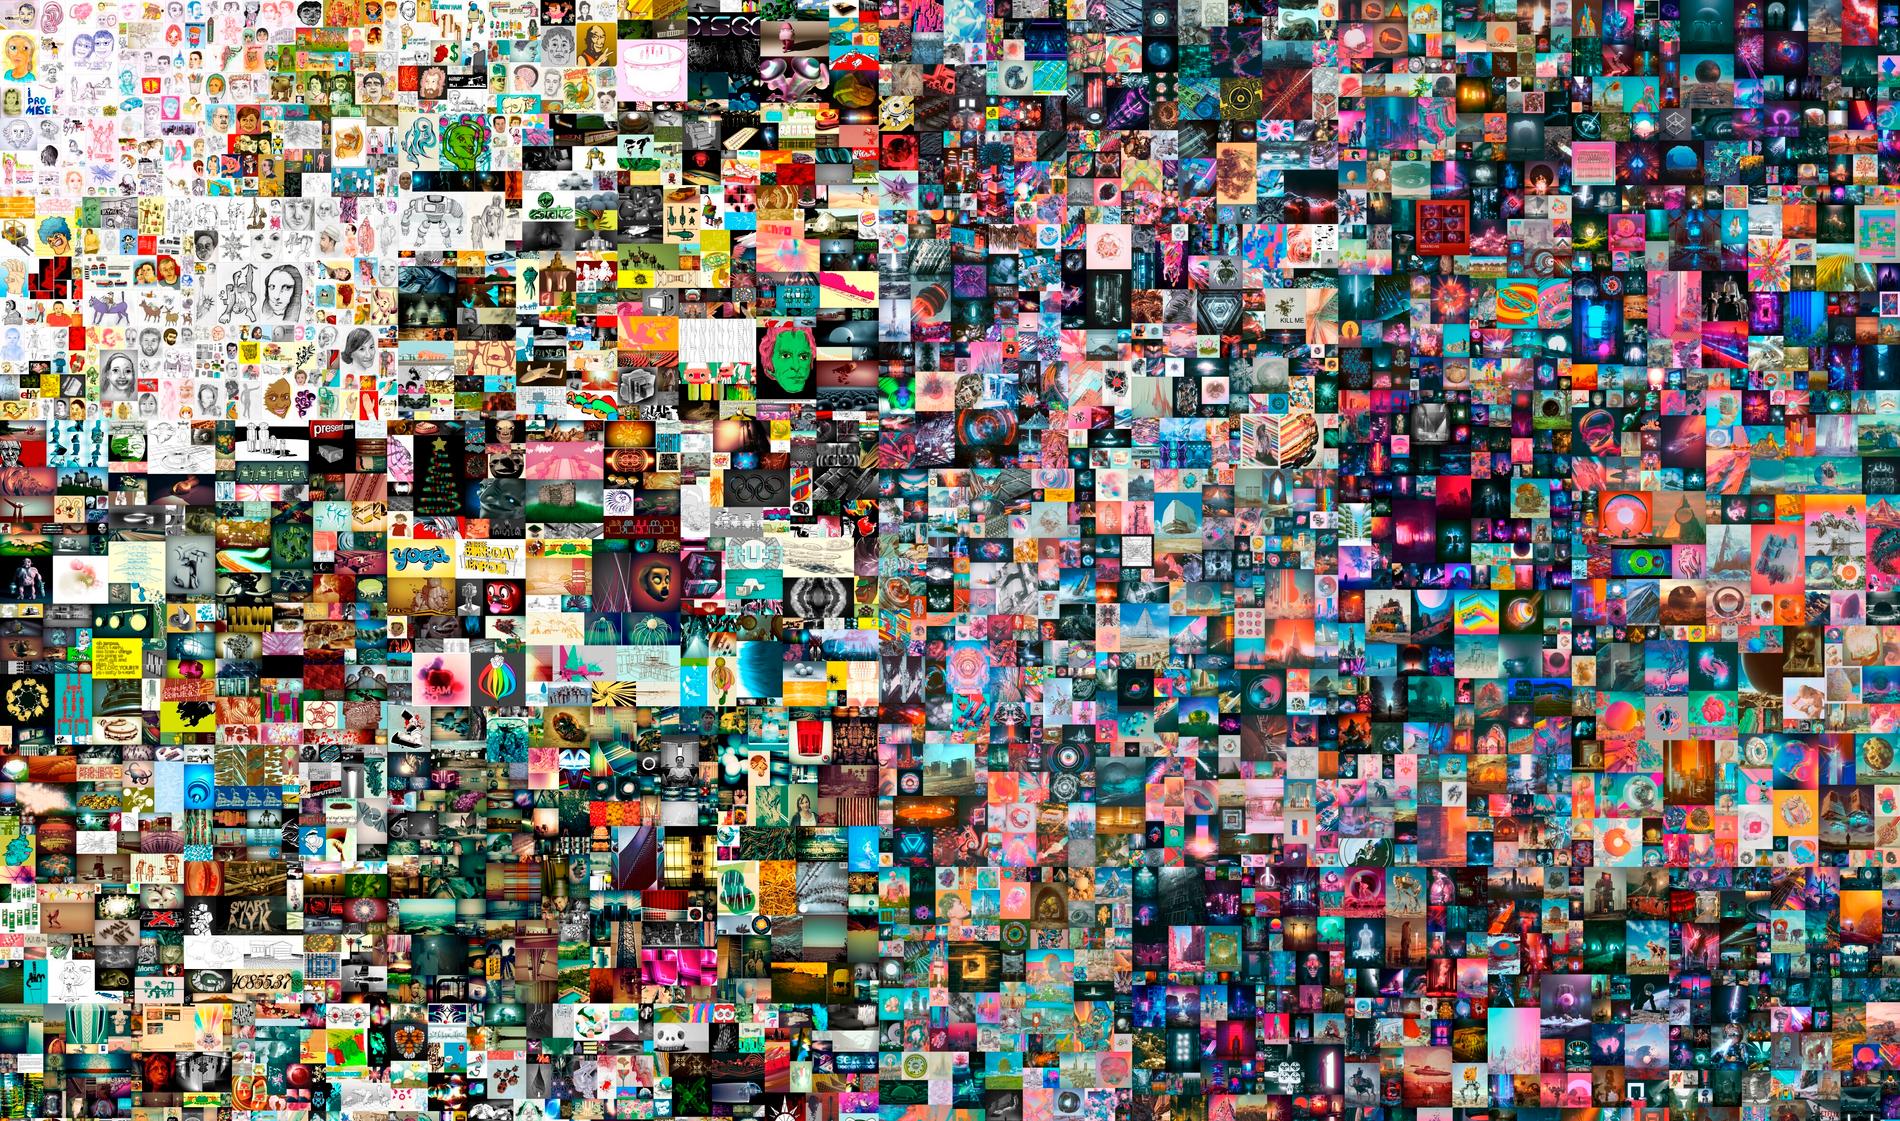 Det digitala verket ”Everydays: The first 5 000 days” av  ”Beeples” såldes nyligen på auktionsfirman Christie’s för 69 miljoner dollar, vilket är det tredje högsta priset någonsin för ett verk av en levande konstnär. (Bilden är beskuren.)